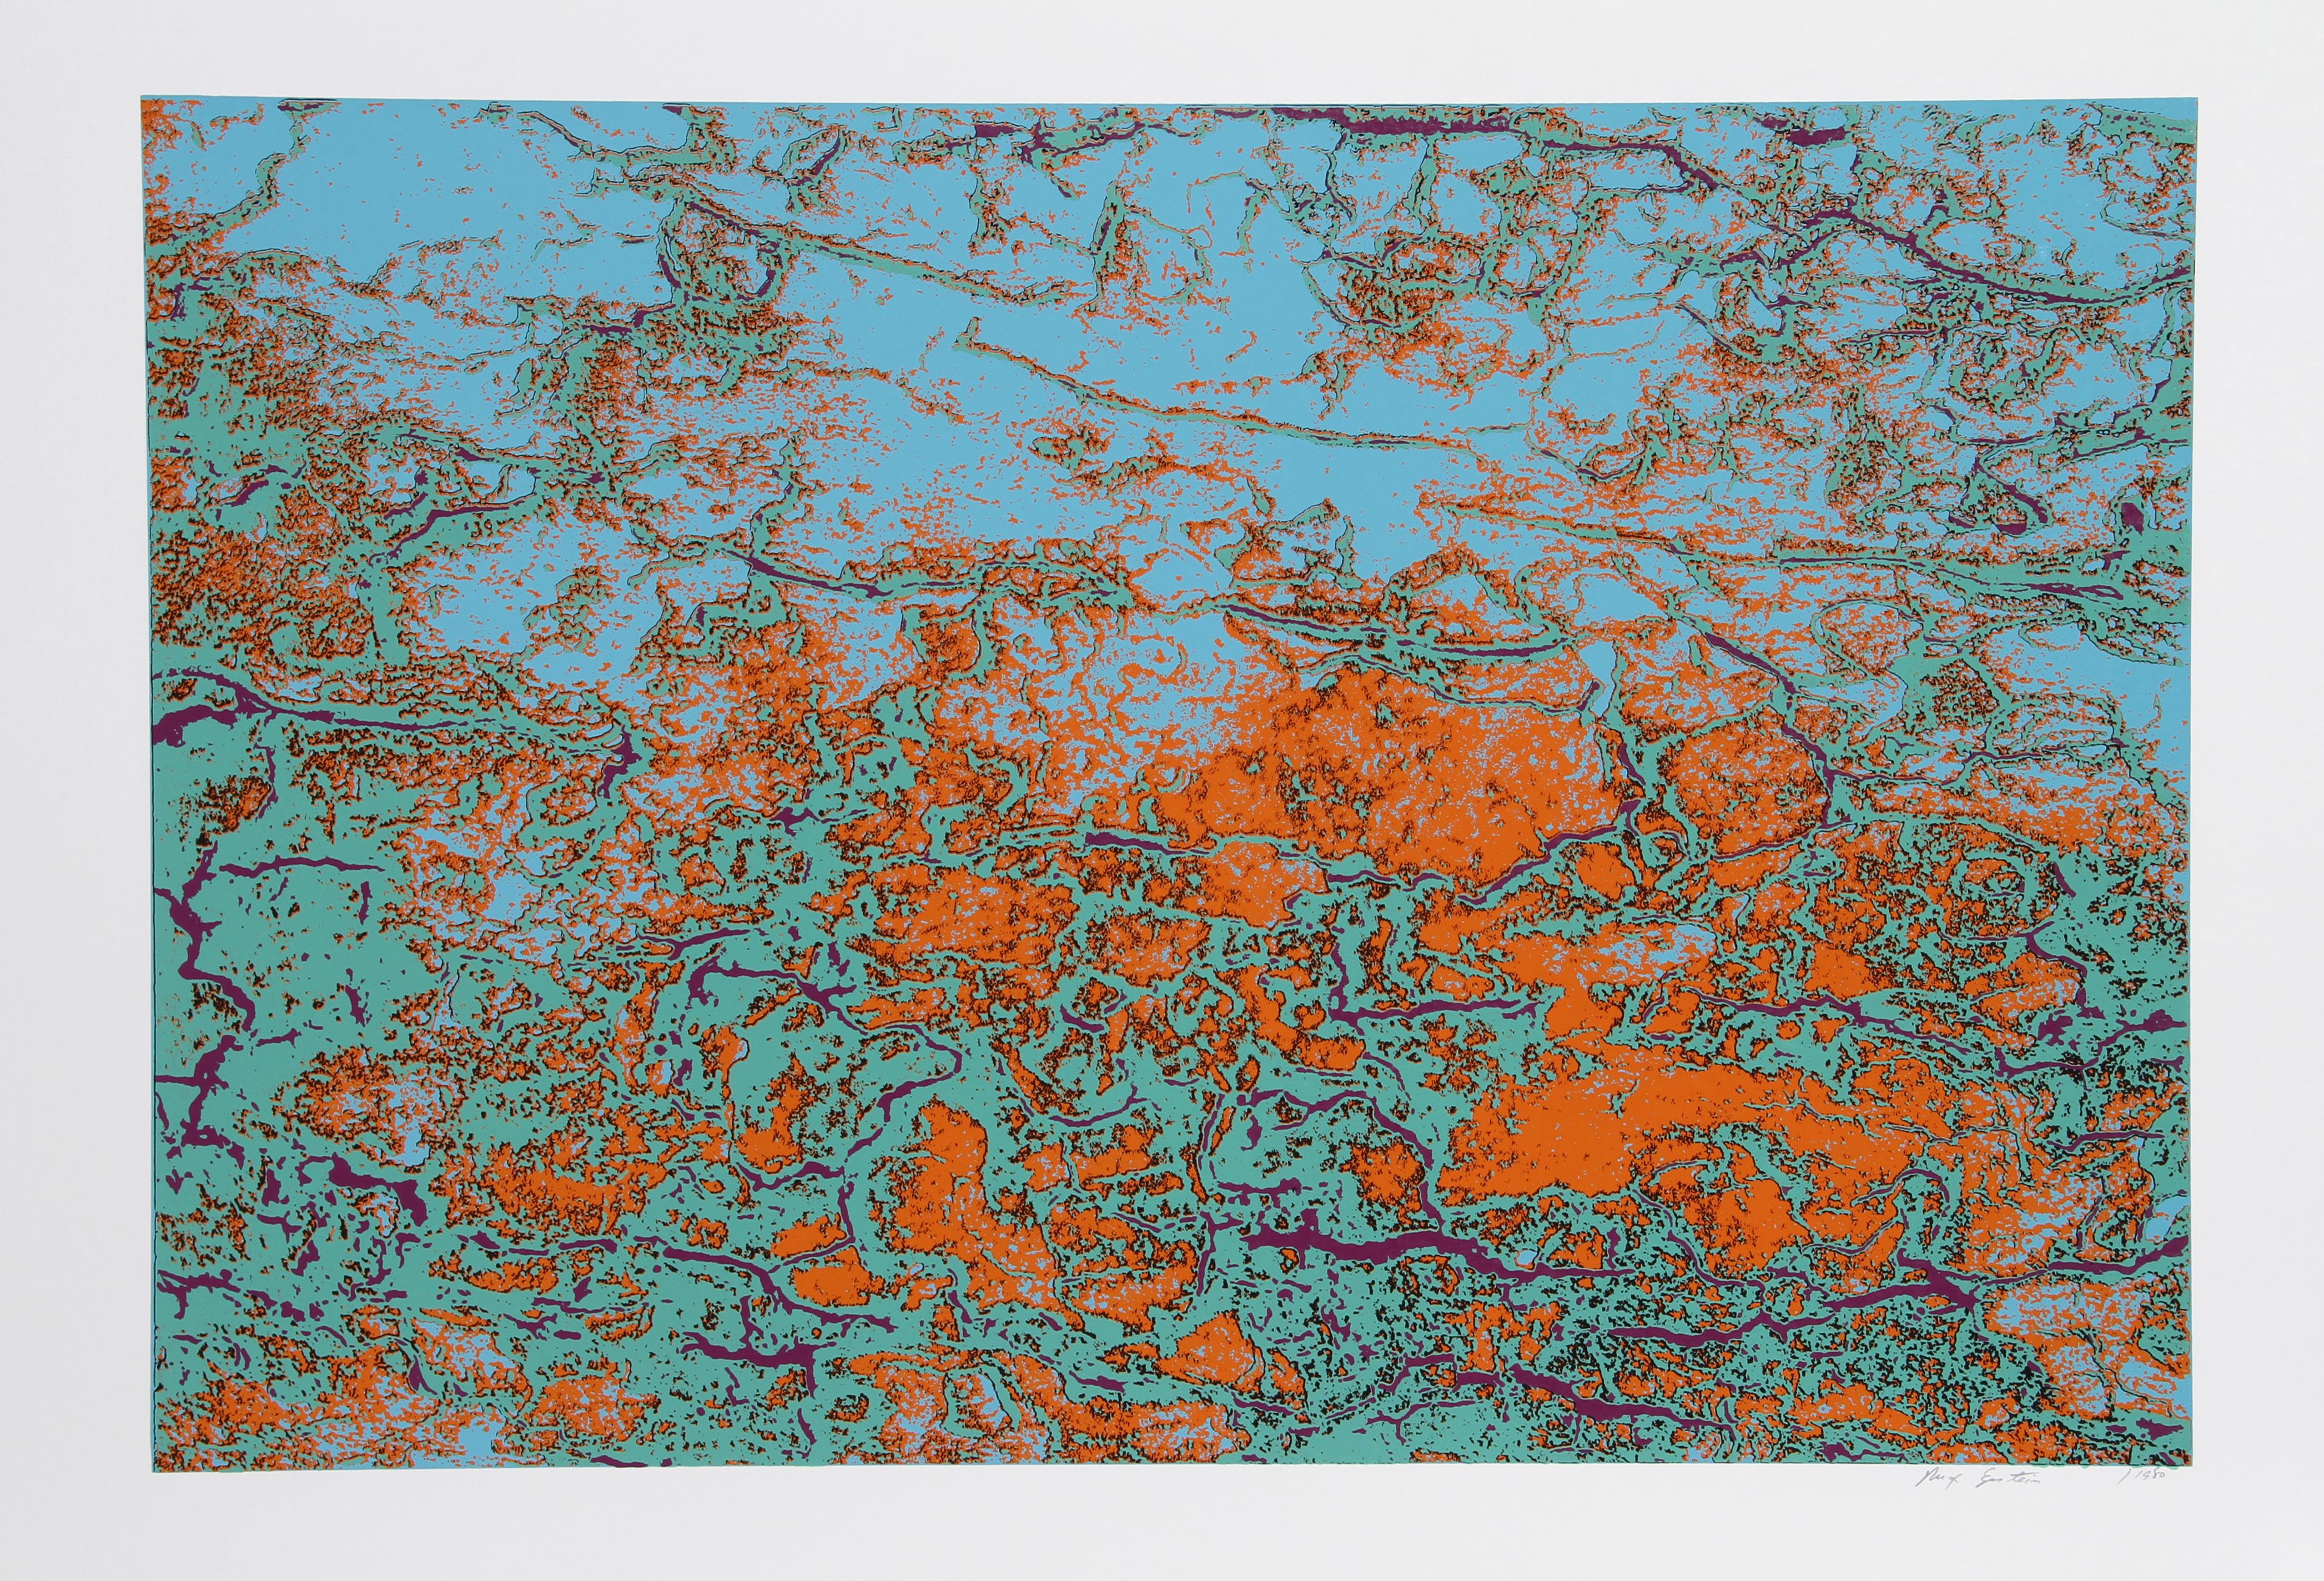 Korallenstein
Max Epstein, Kanadier (1932-2002)
Datum: 1980
Siebdruck, mit Bleistift signiert
Auflage von 99, AP
Bildgröße: 19 x 28 Zoll
Größe: 23 Zoll x 35 Zoll (58,42 cm x 88,9 cm)